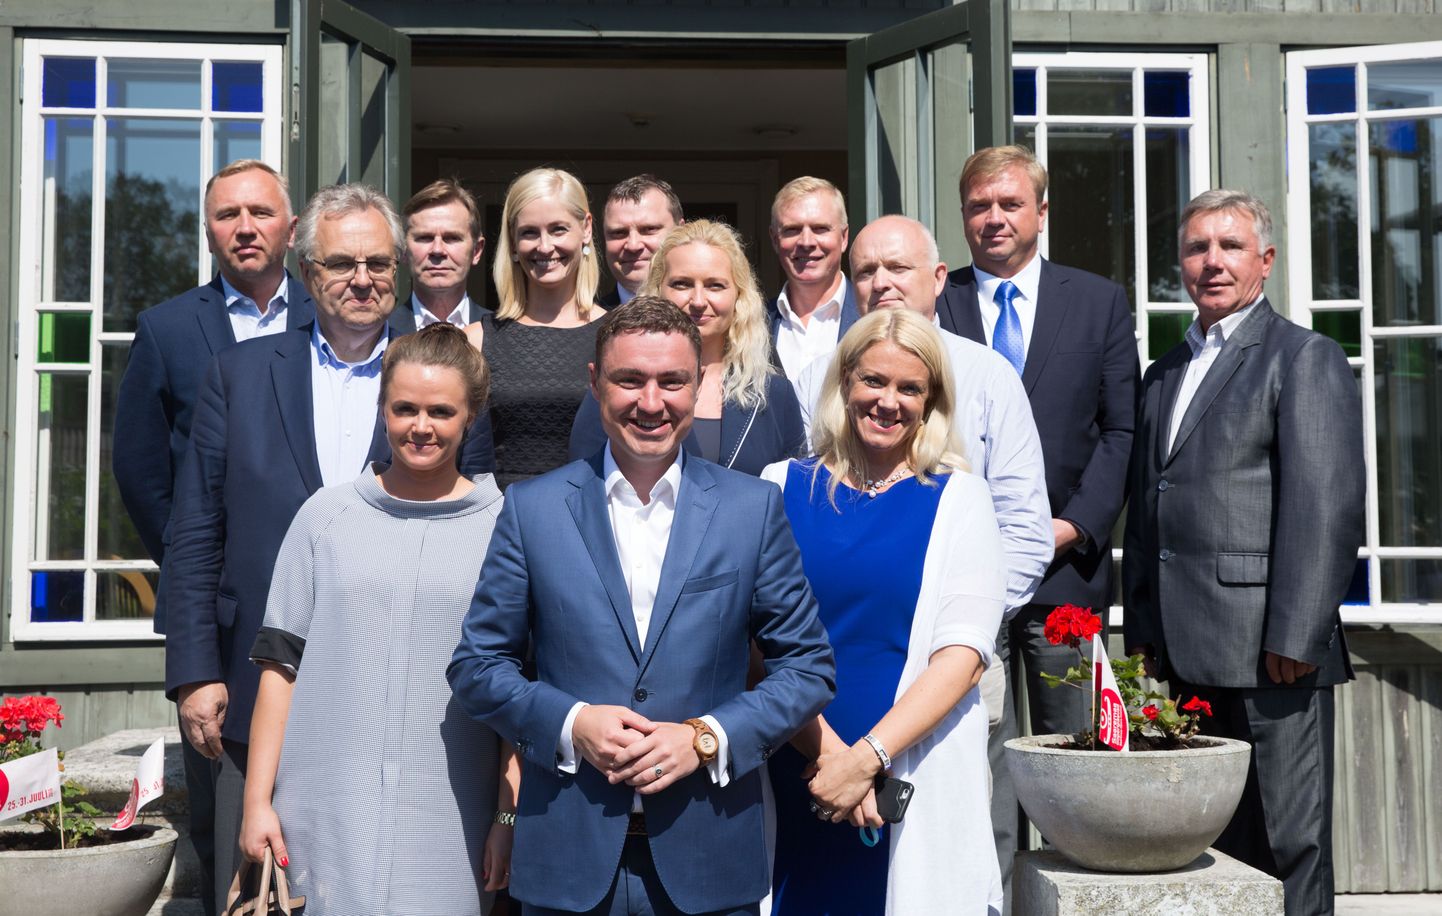 Saaremaa, 29. juuli 2016 – Peaminister Taavi Rõivas kohtus Saaremaa ettevõtjatega ja Luisa Värk näitas oma  kasvavat kõhukest